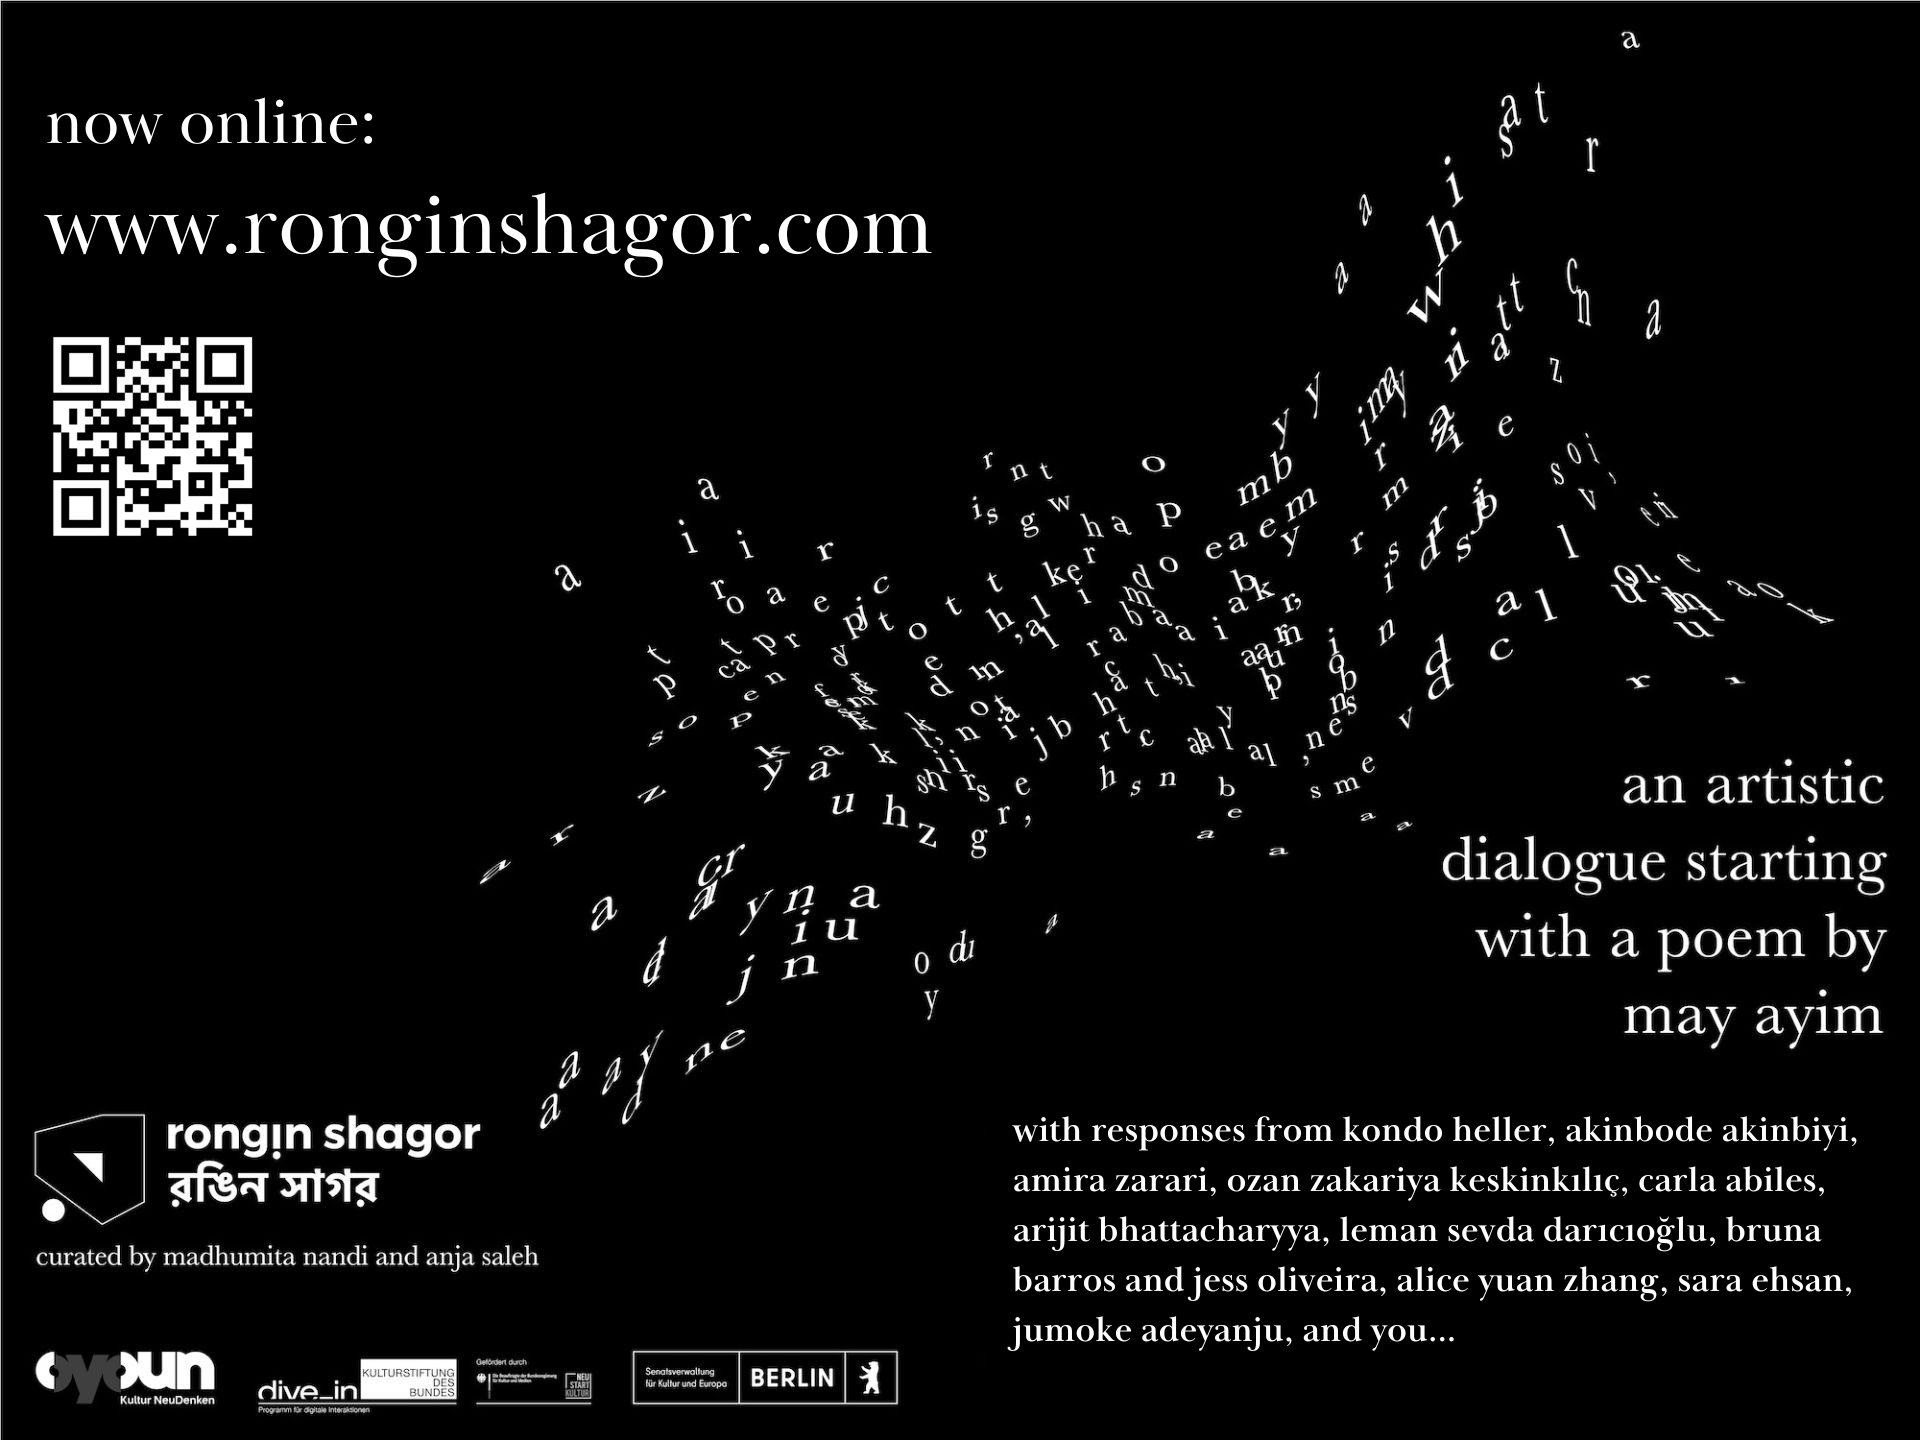 إطلاق الموقع | رونجين شاجور / রঙিন সাগর - حوار فني يبدأ بقصيدة مي عاييم